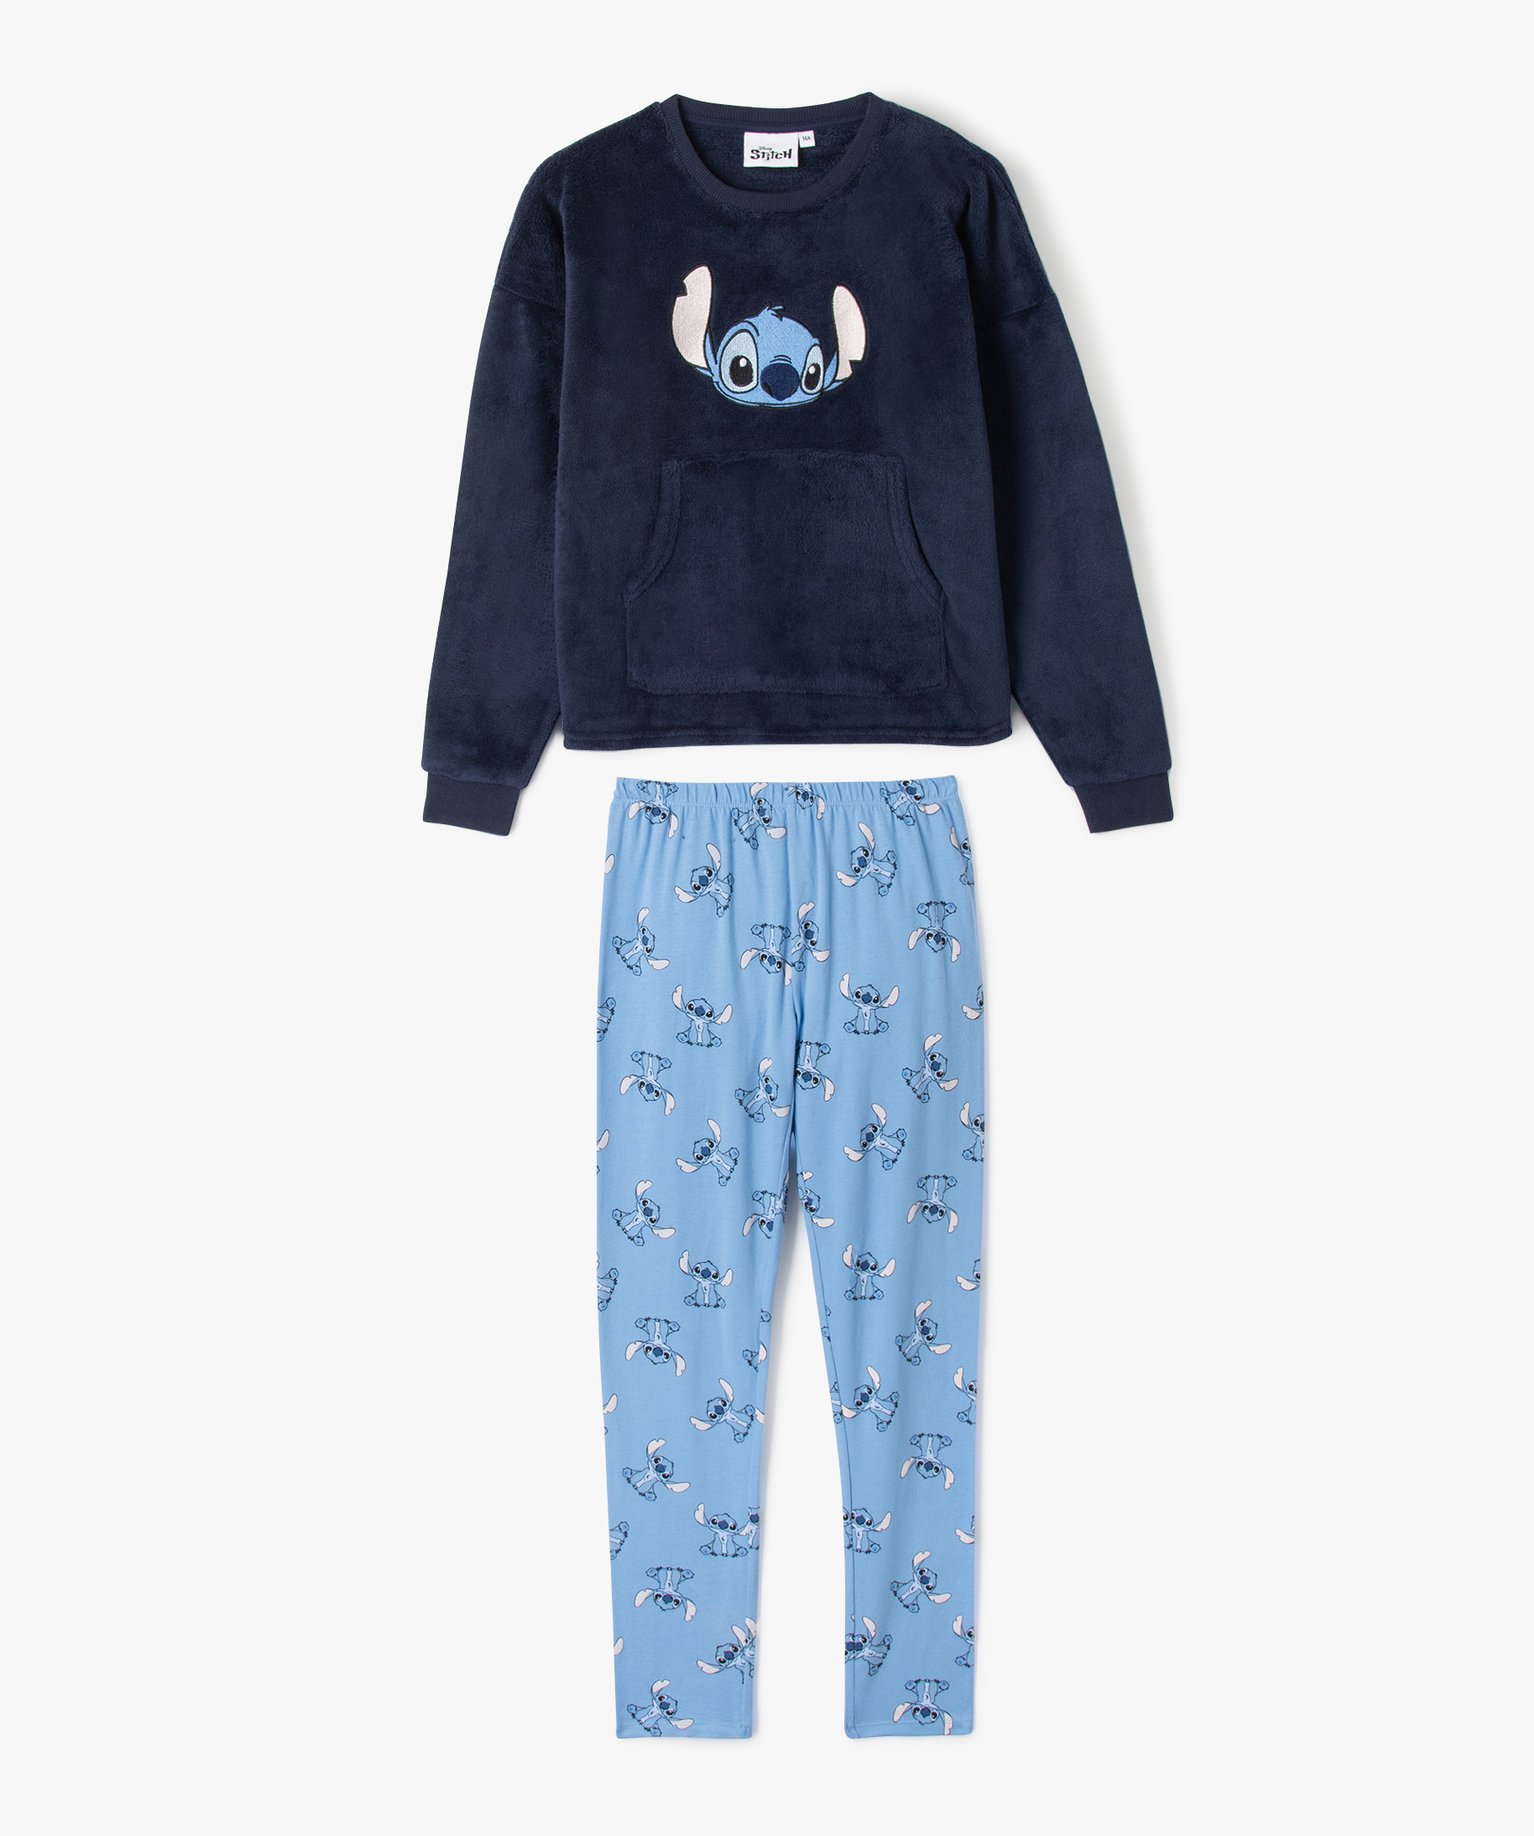 Ensemble pyjama pantalon Stitch coton bleu fille